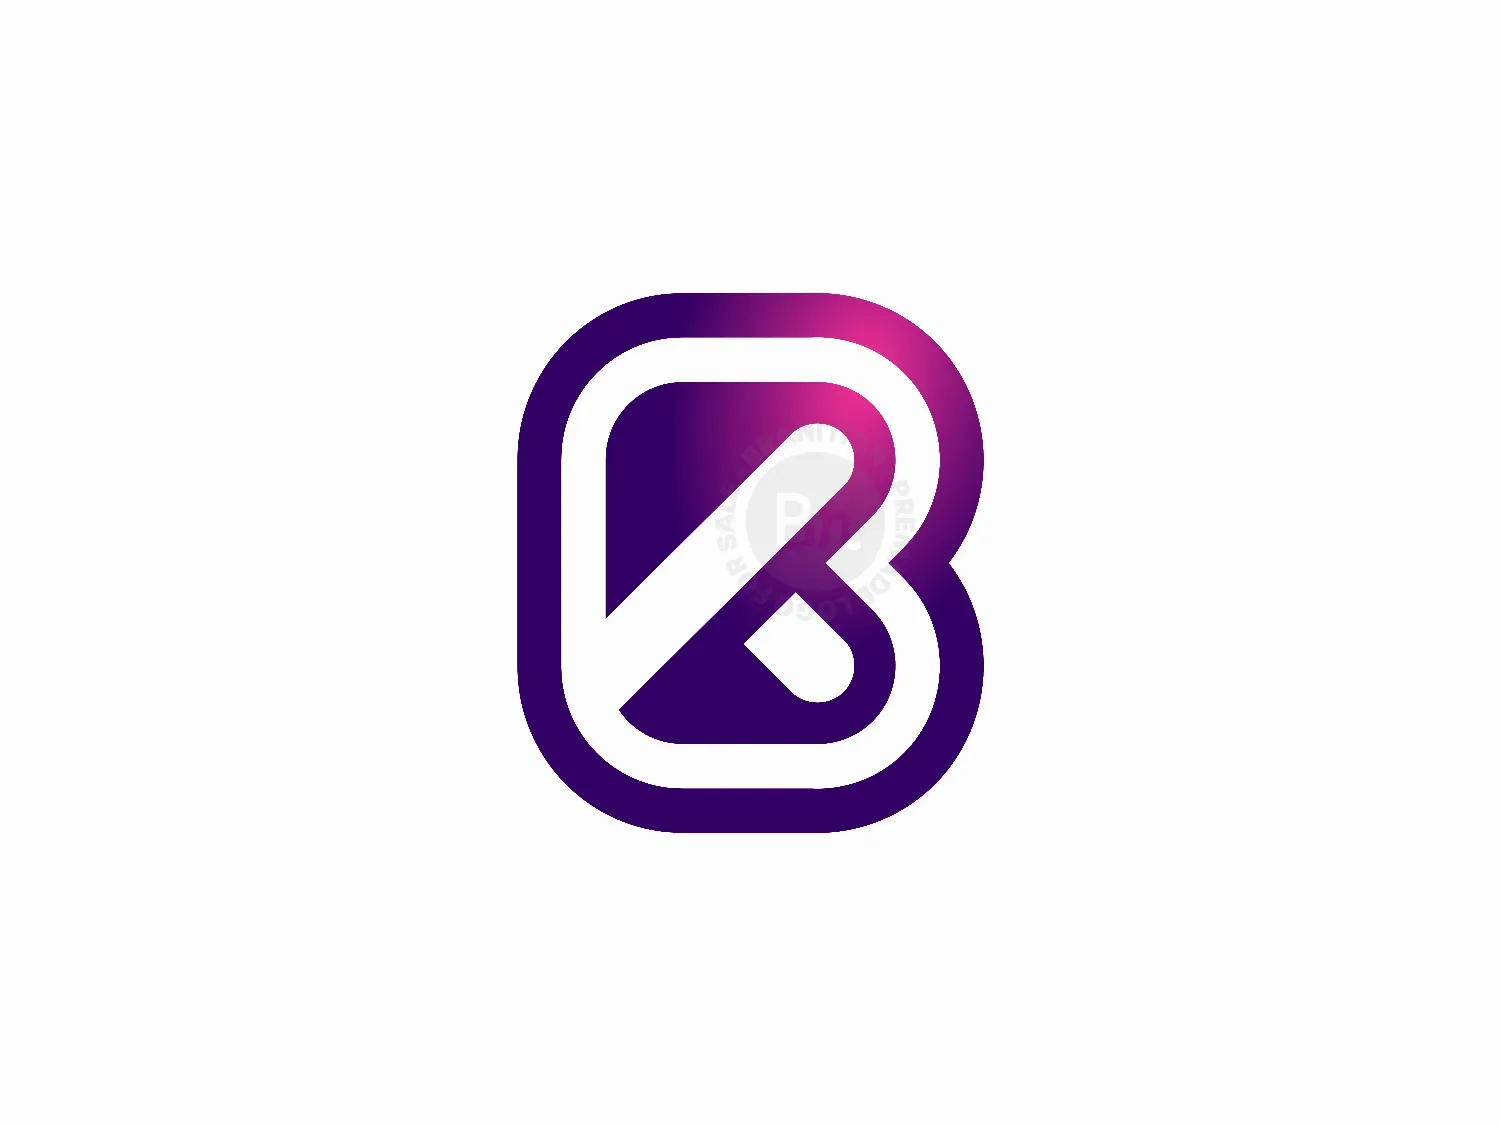 Premium Vector | Letter bk or kb logo